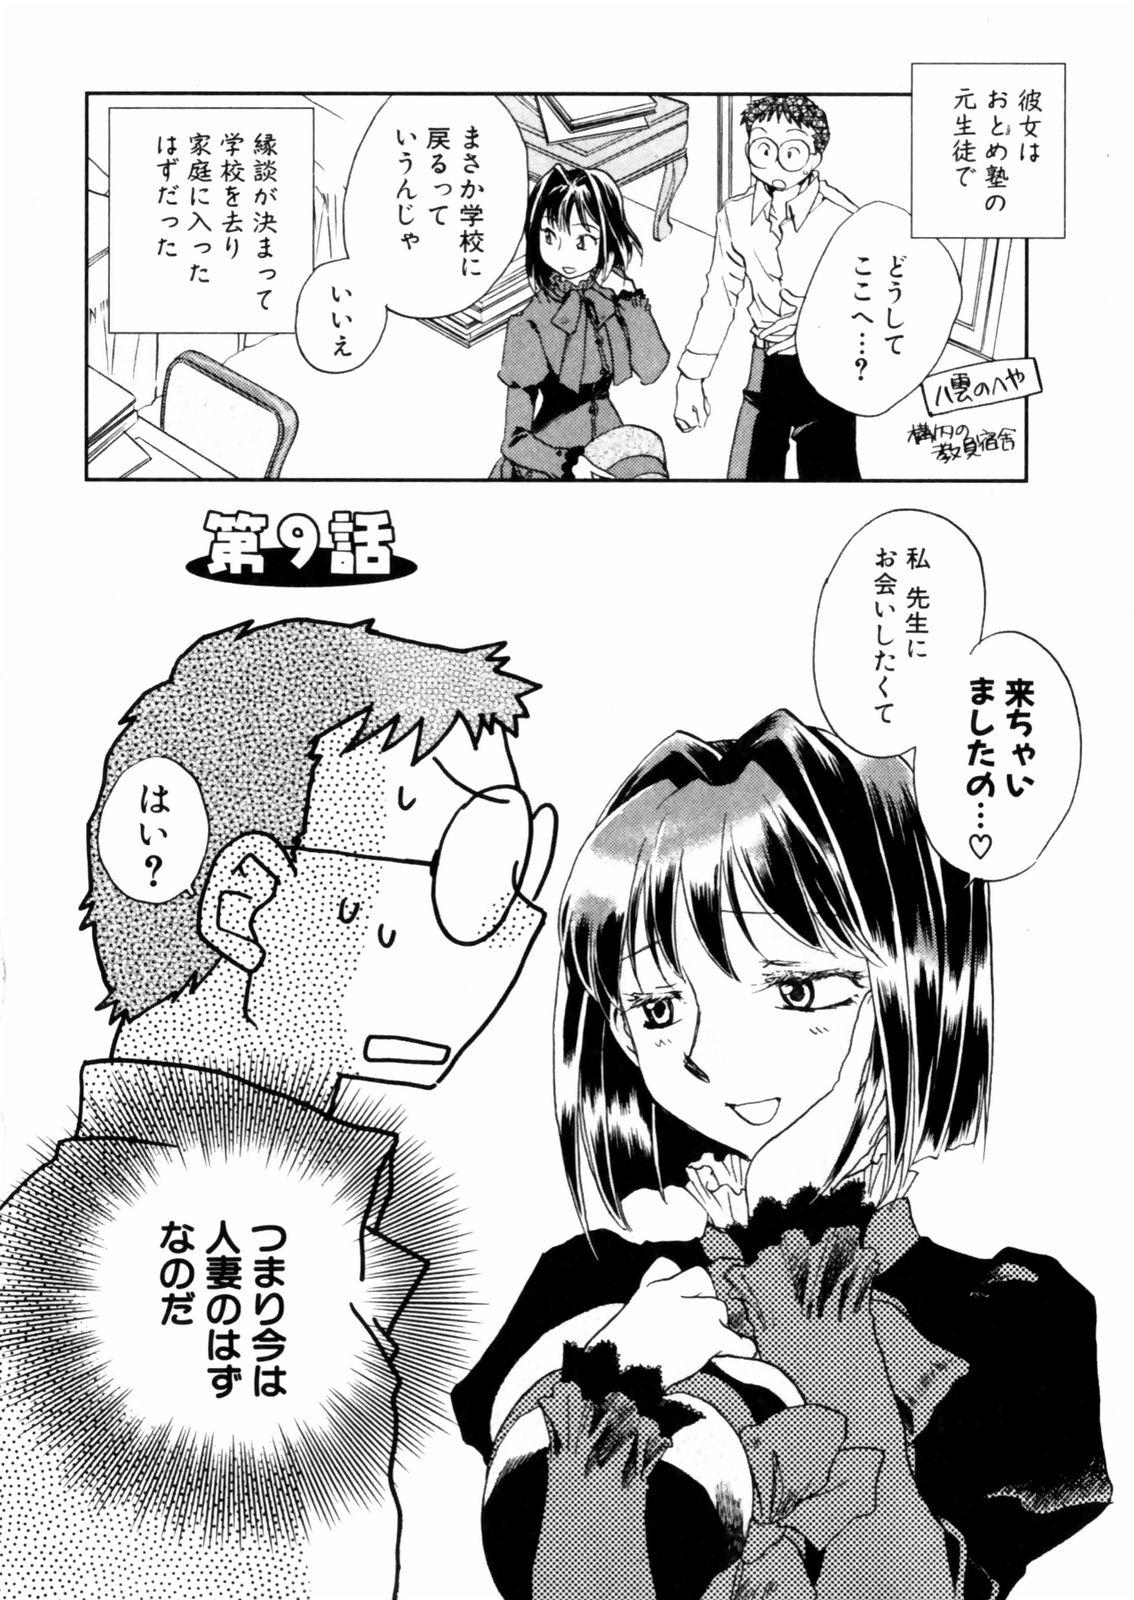 [Okano Ahiru] Hanasake ! Otome Juku (Otome Private Tutoring School) Vol.2 45